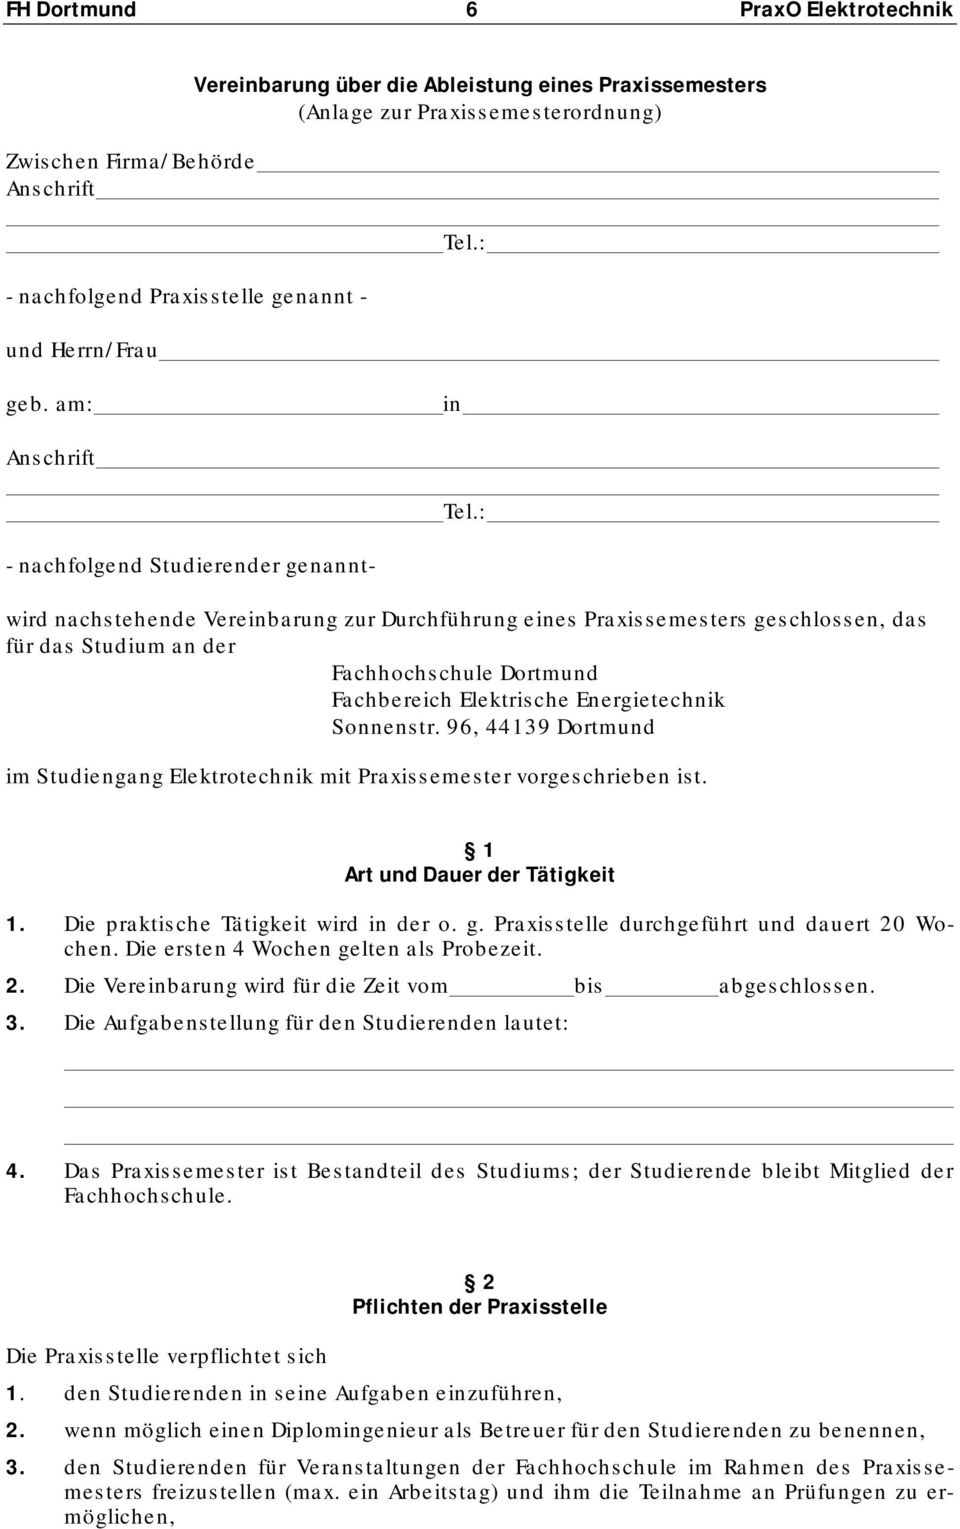 : - nachfolgend Studierender genanntwird nachstehende Vereinbarung zur Durchführung eines Praxissemesters geschlossen, das für das Studium an der Fachhochschule Dortmund Fachbereich Elektrische